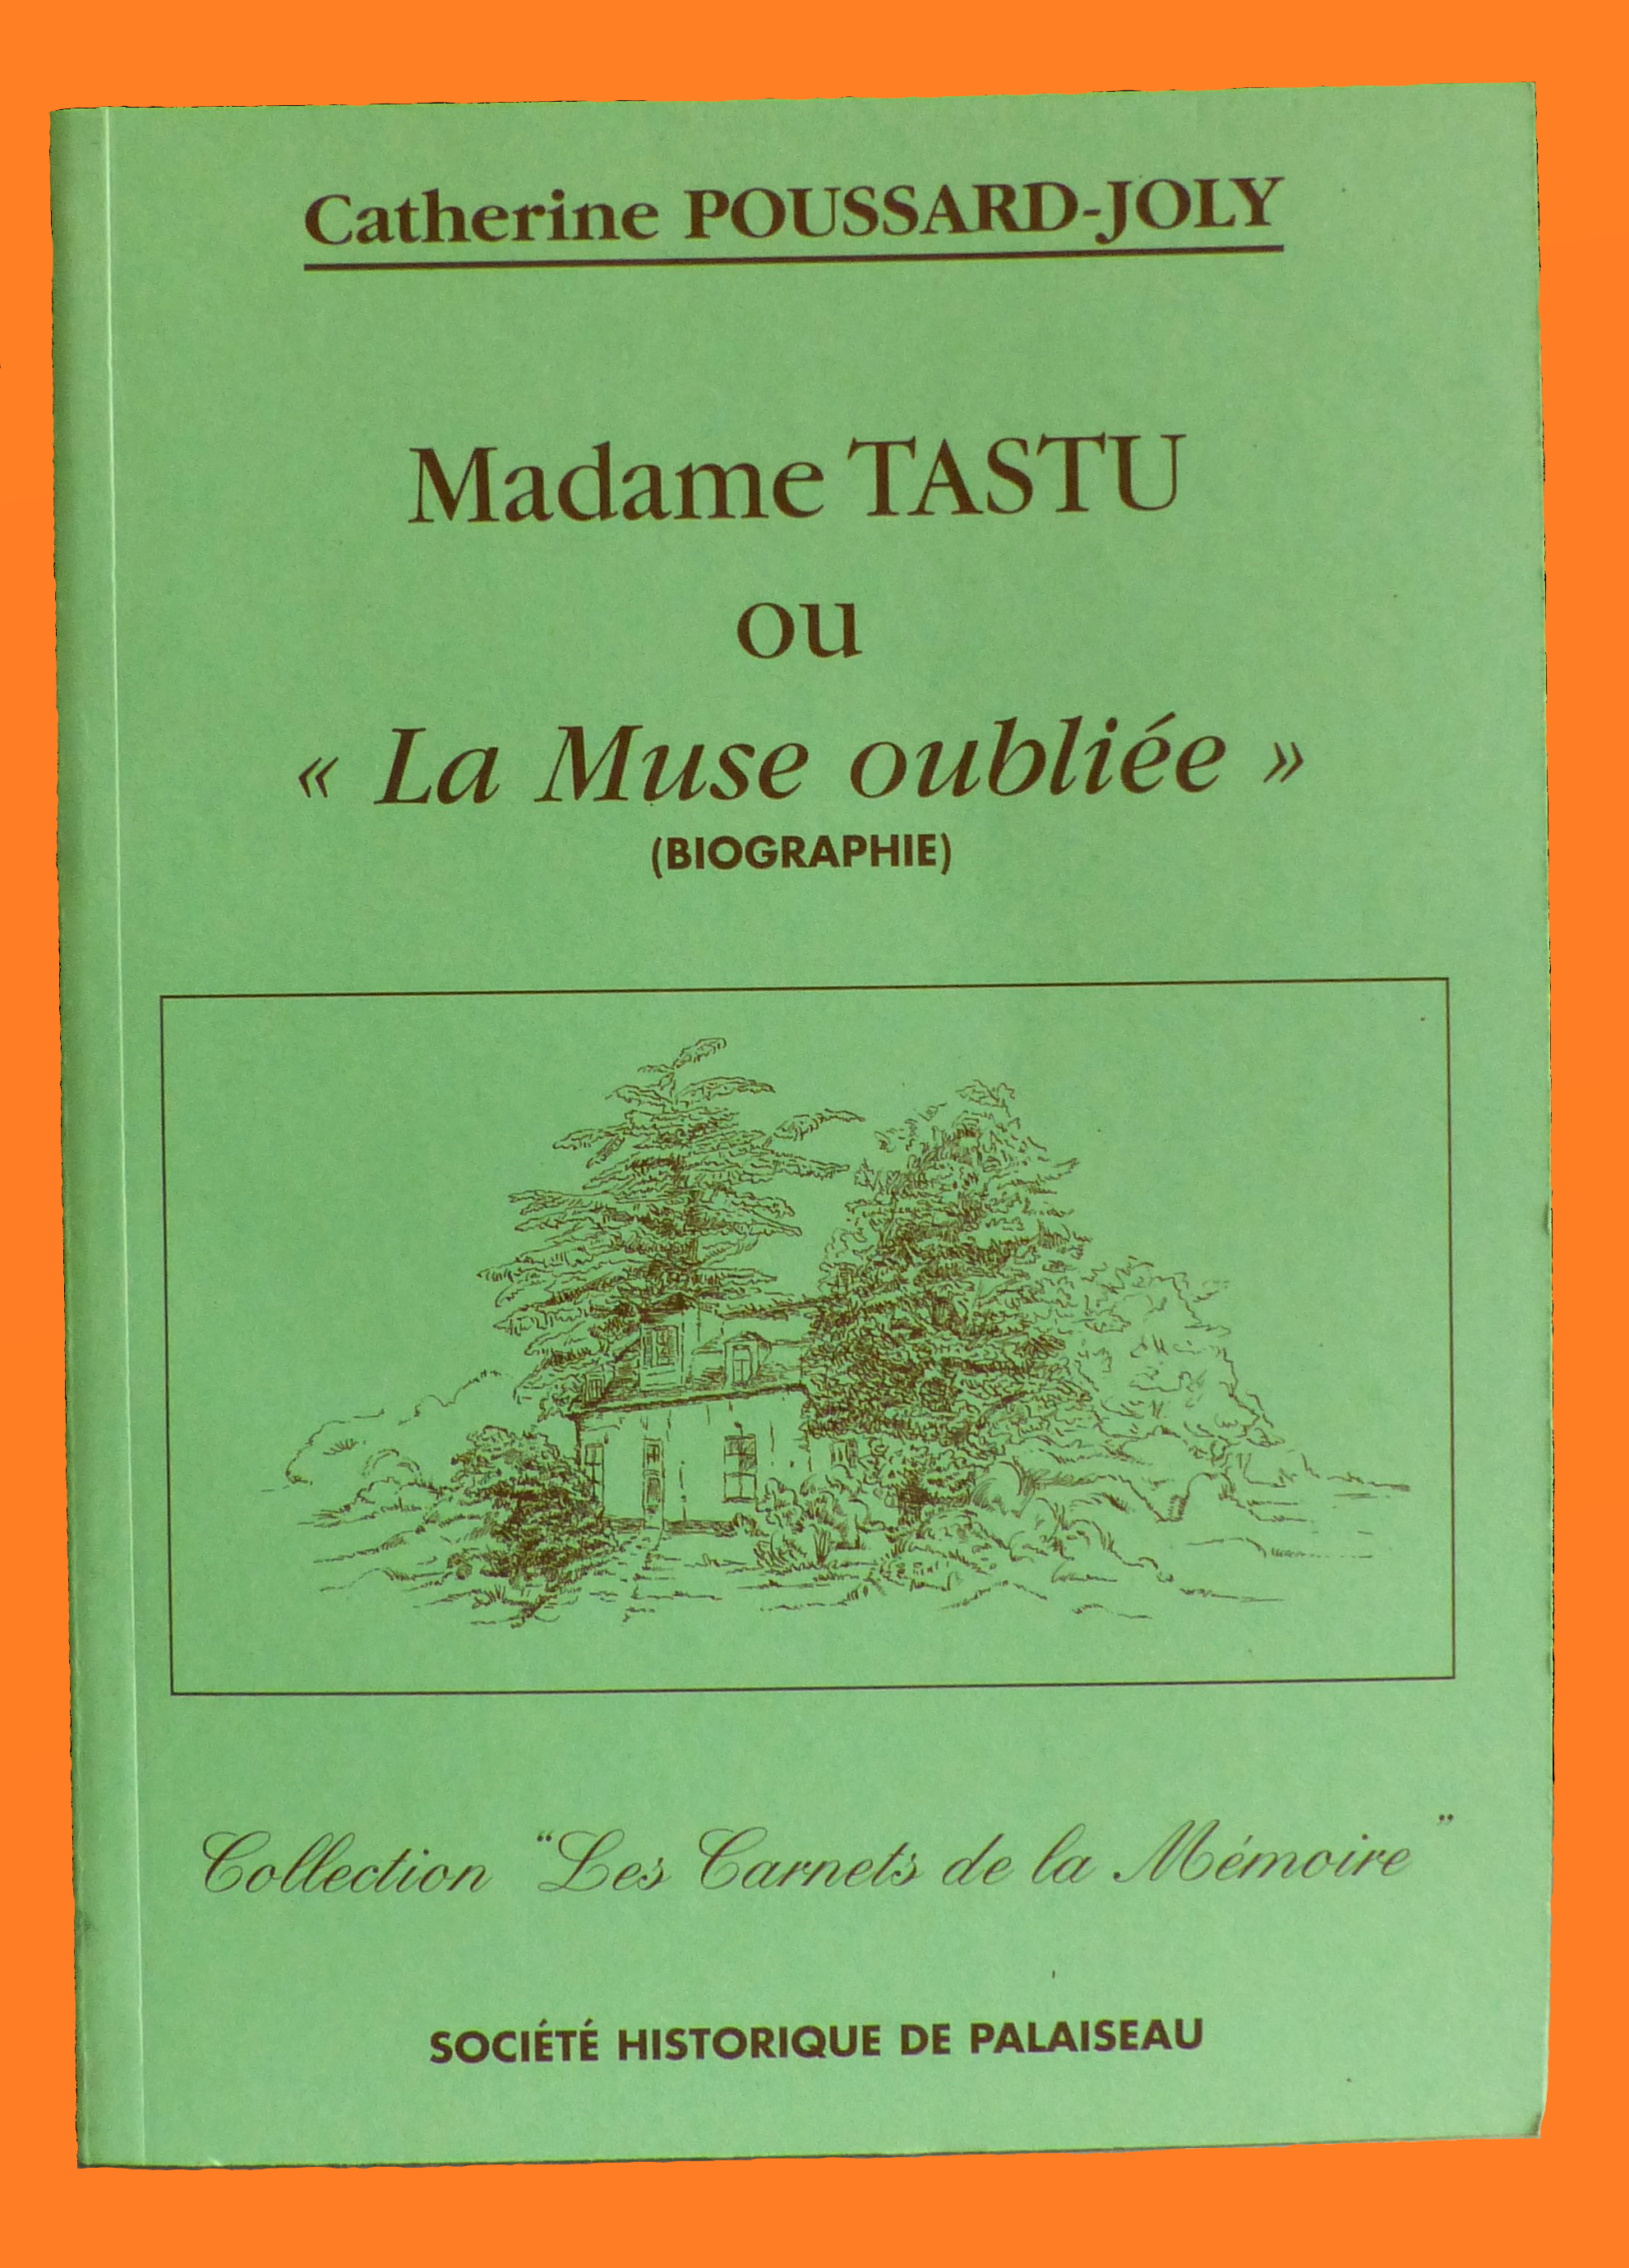 Madame TASTU ou "La Muse oubliée"